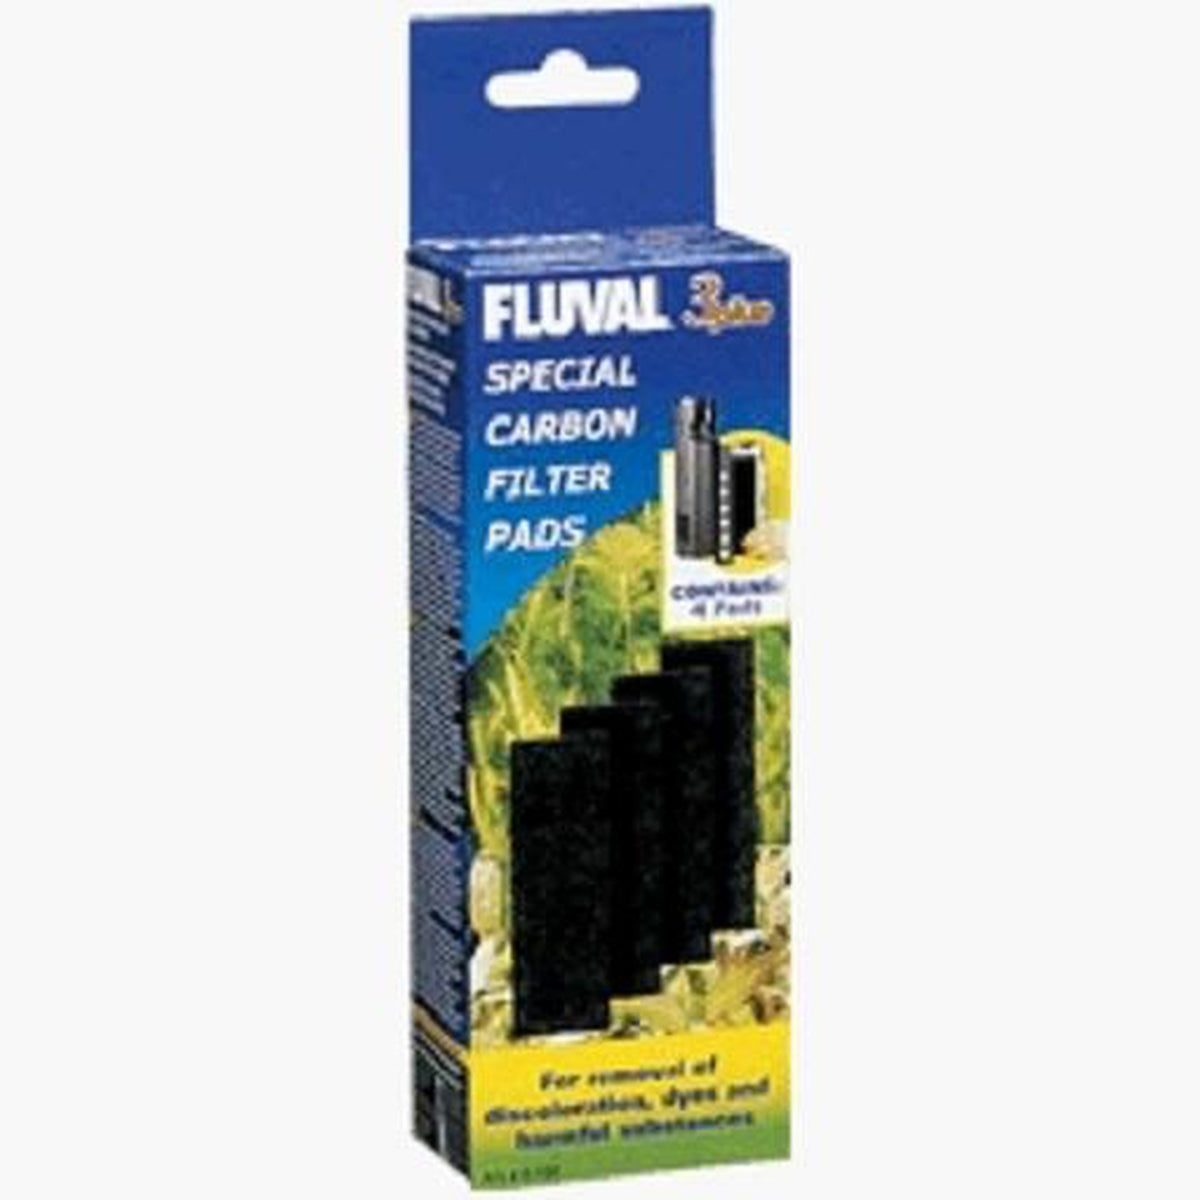 Fluval 3 Plus Carbon Pads 4pk